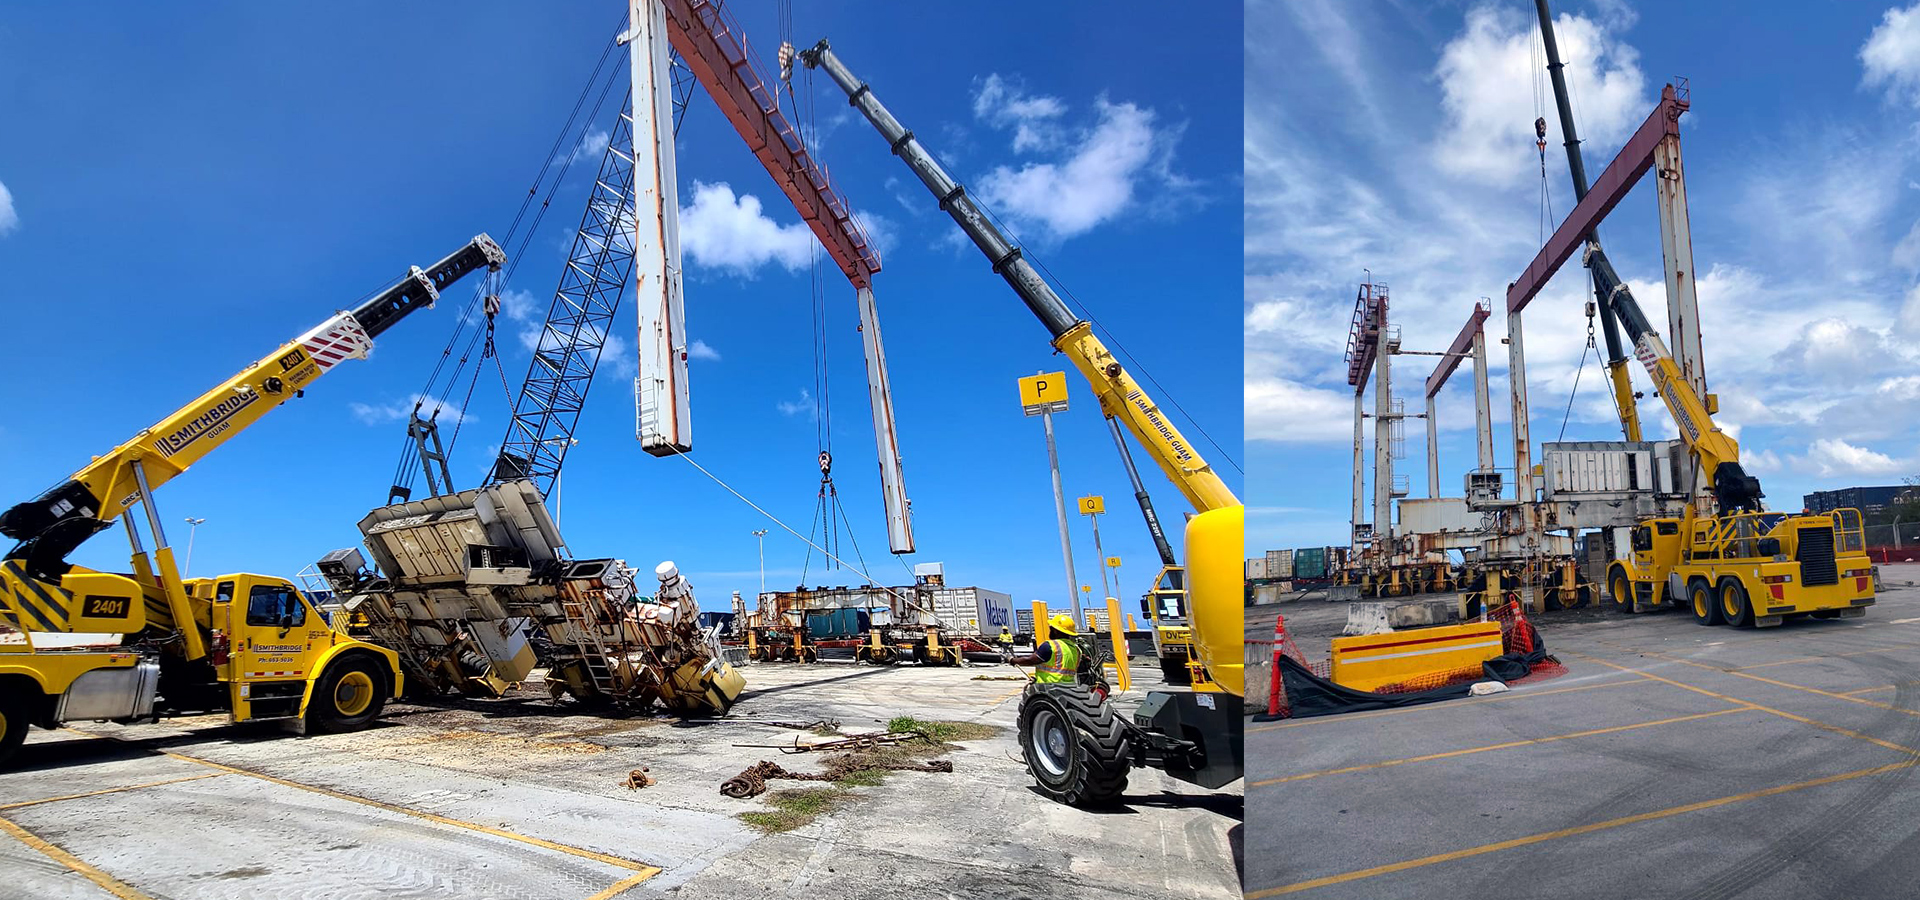 Port of Guam RTG cranes Demolition 